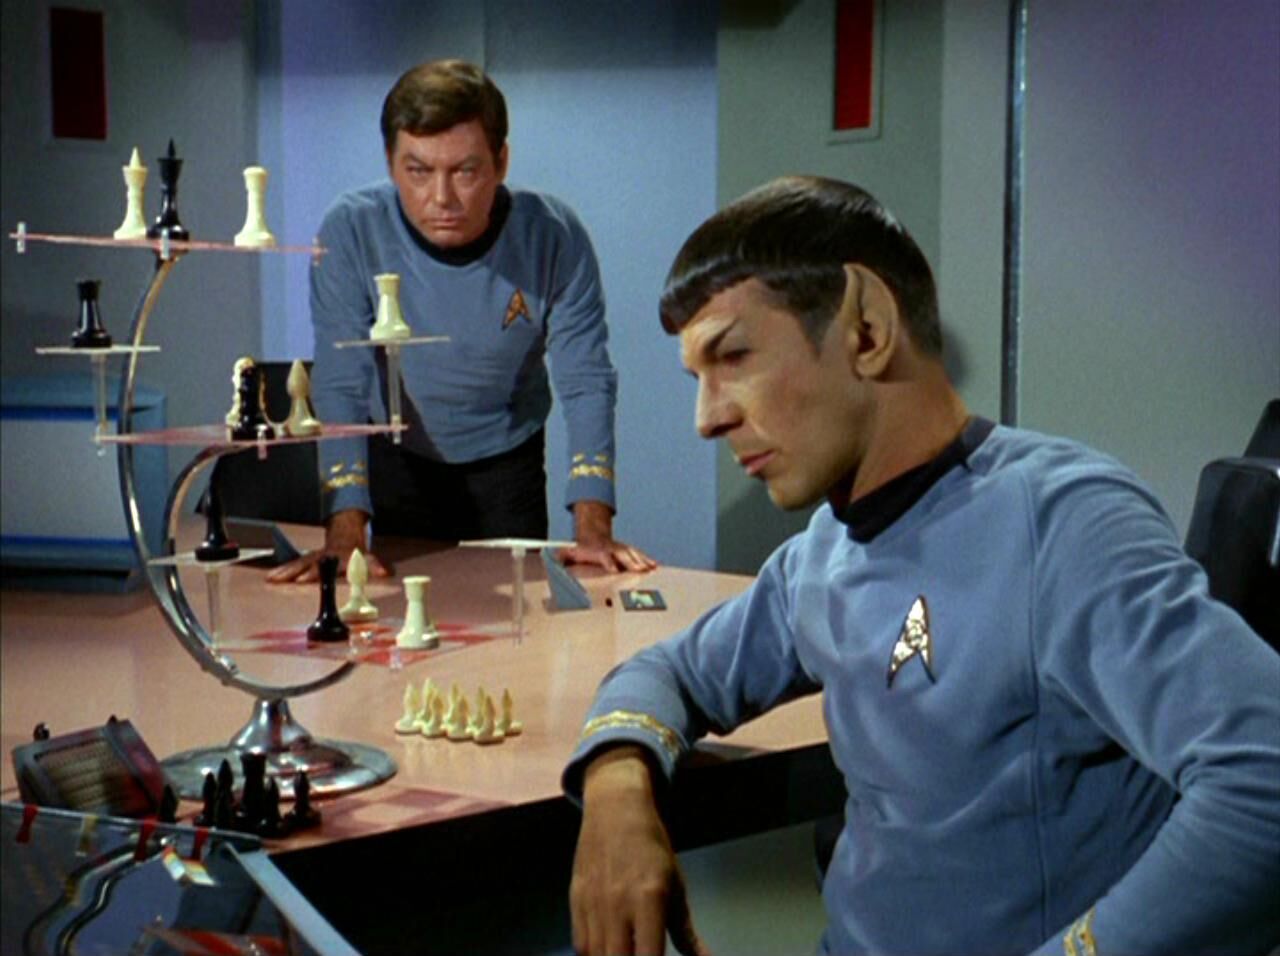 Chess Set - Star Trek. Mr Spock 3D Chess.